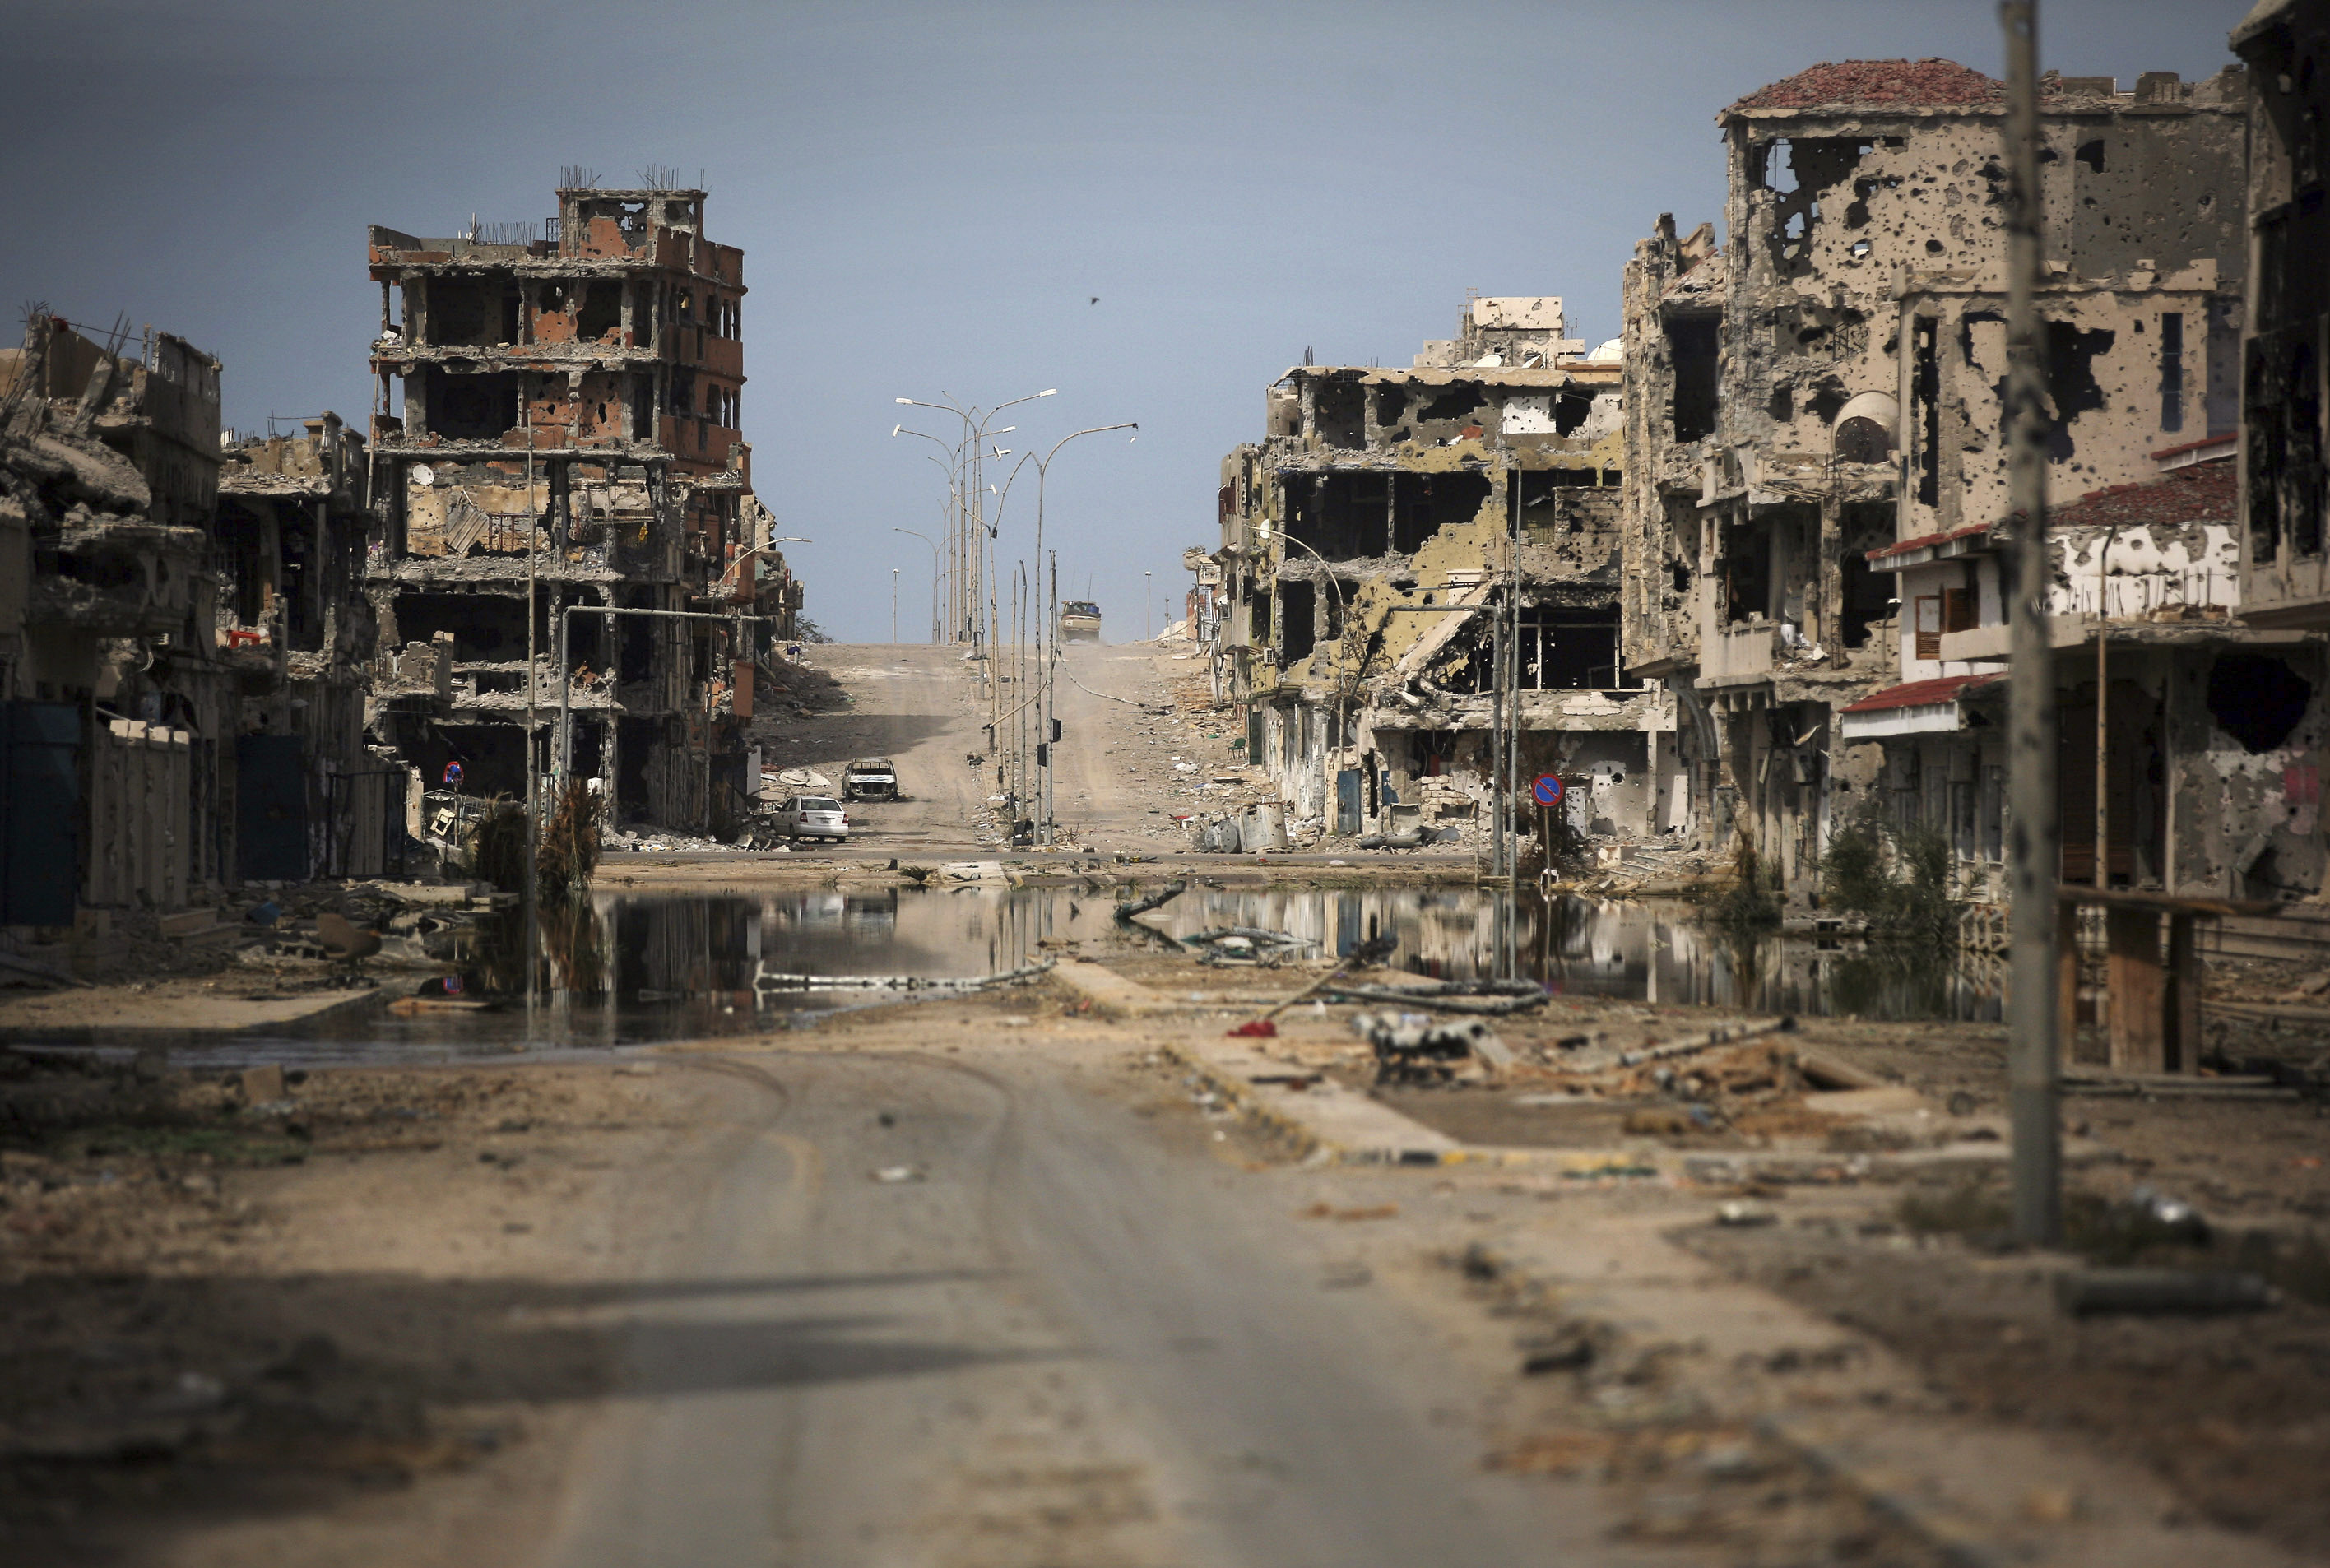 Архивна снимка (октомври 2011 г.) от развалини след боеве в град Сирт, Либия